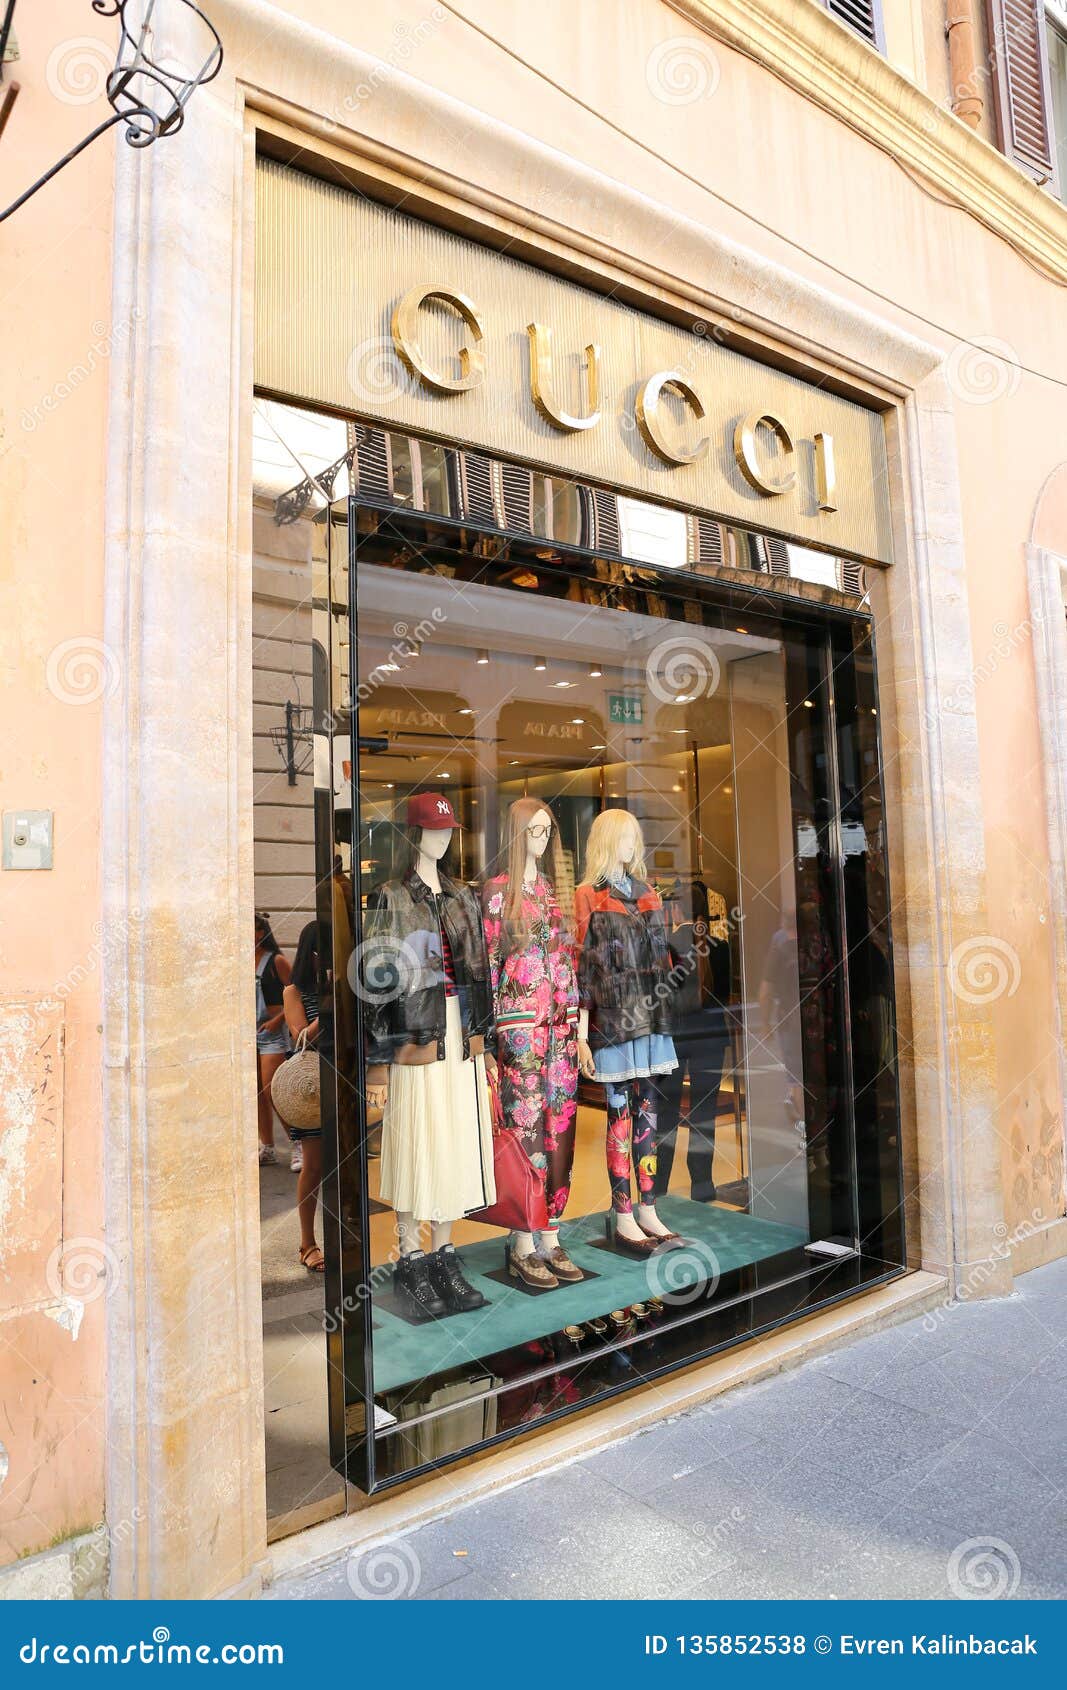 Gucci in Condotti, Rome, Italy Editorial Stock Photo - Image condotti, fashione: 135852538